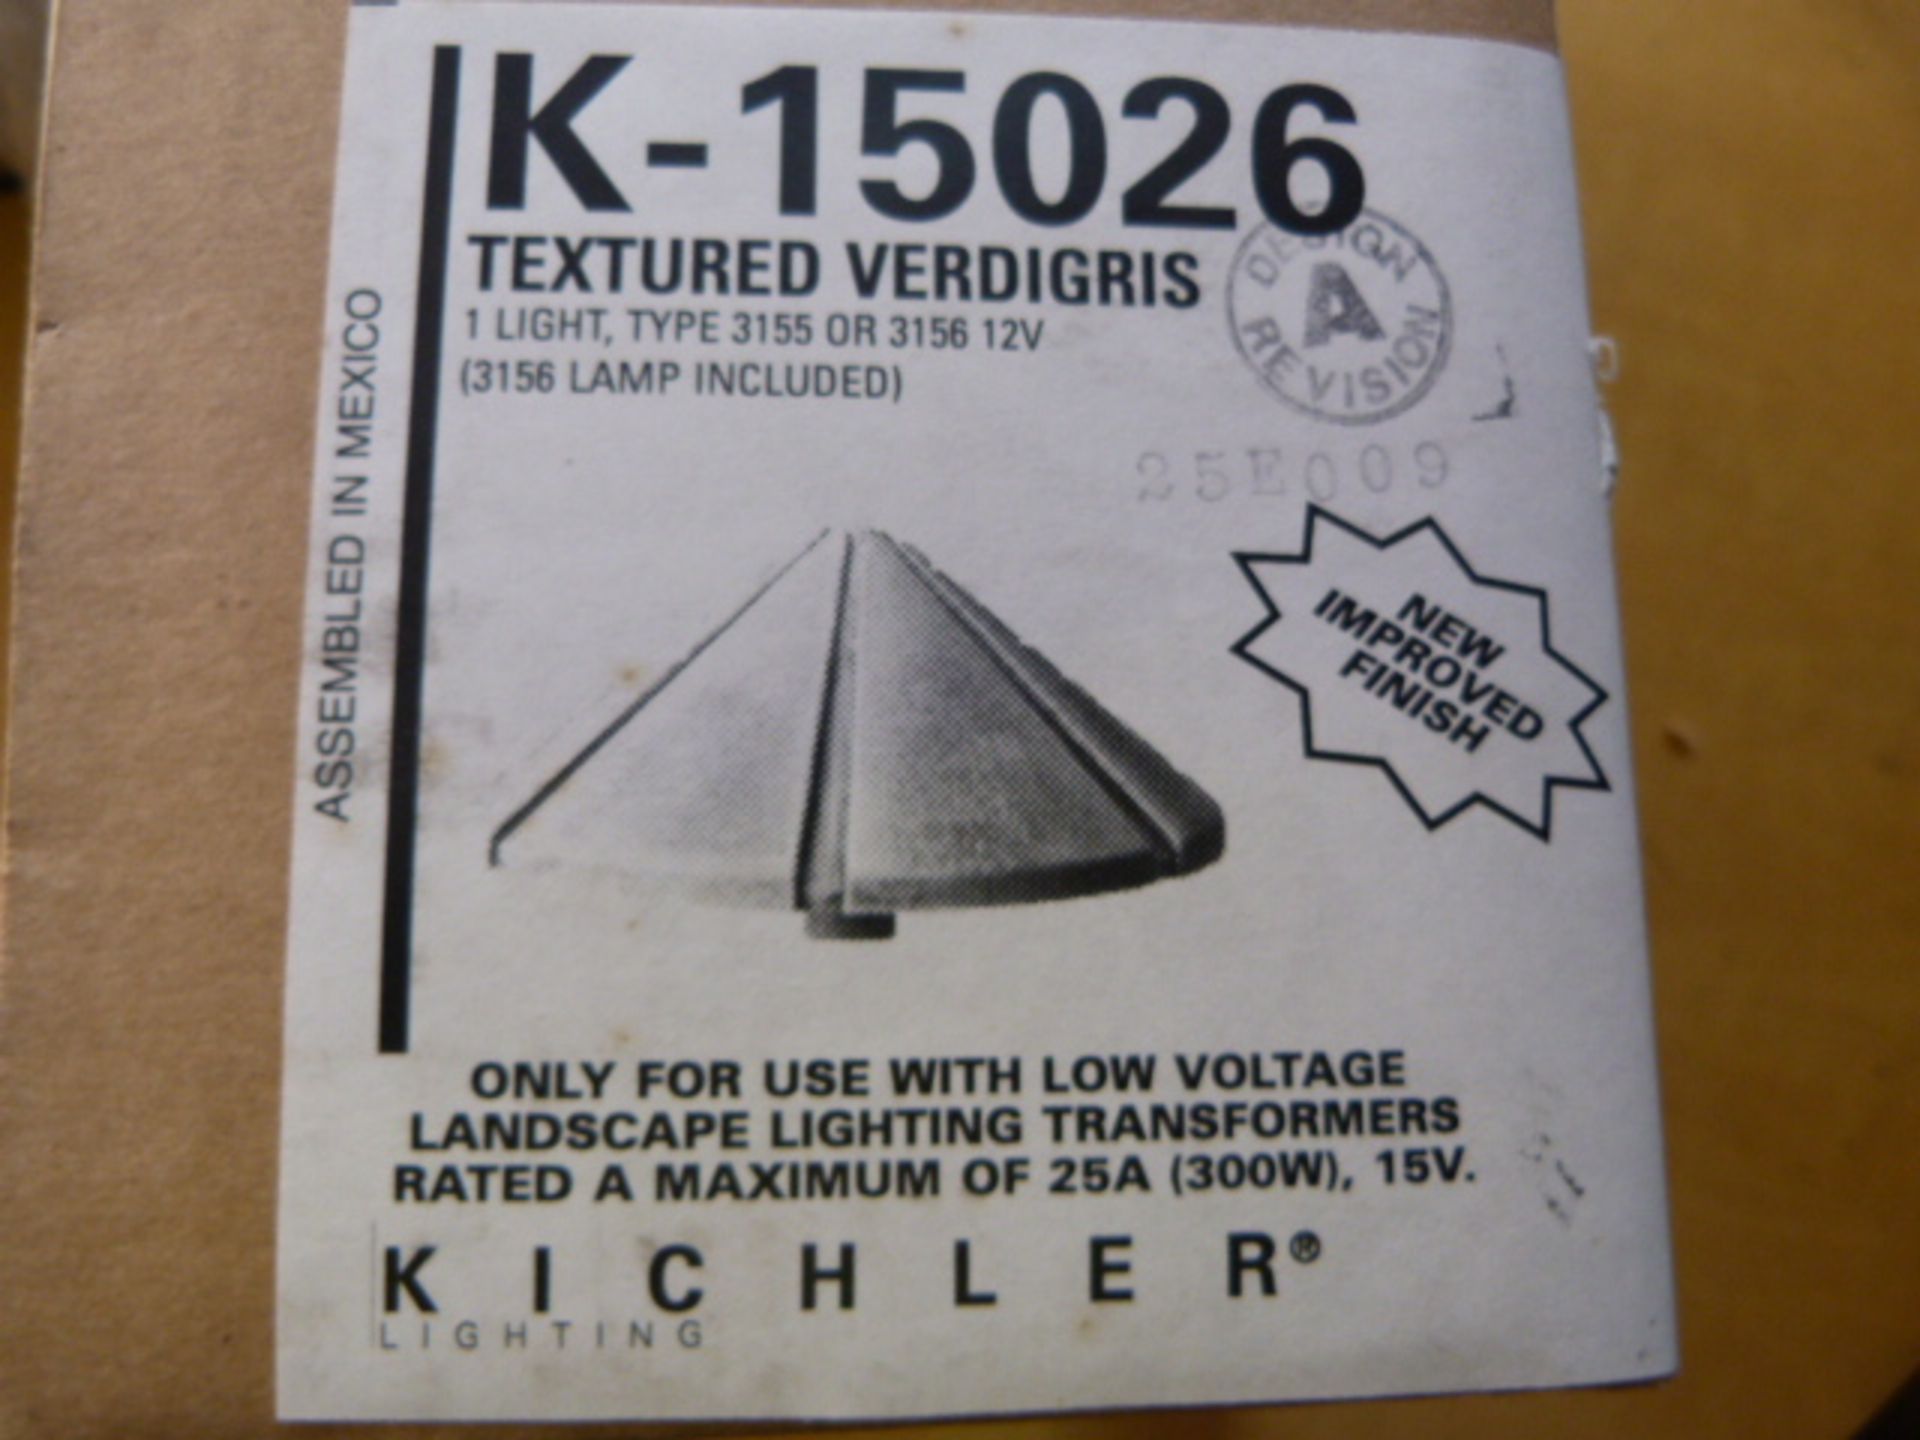 *Textured Verdigris 12v Light Fitting K-15026 - Image 2 of 2